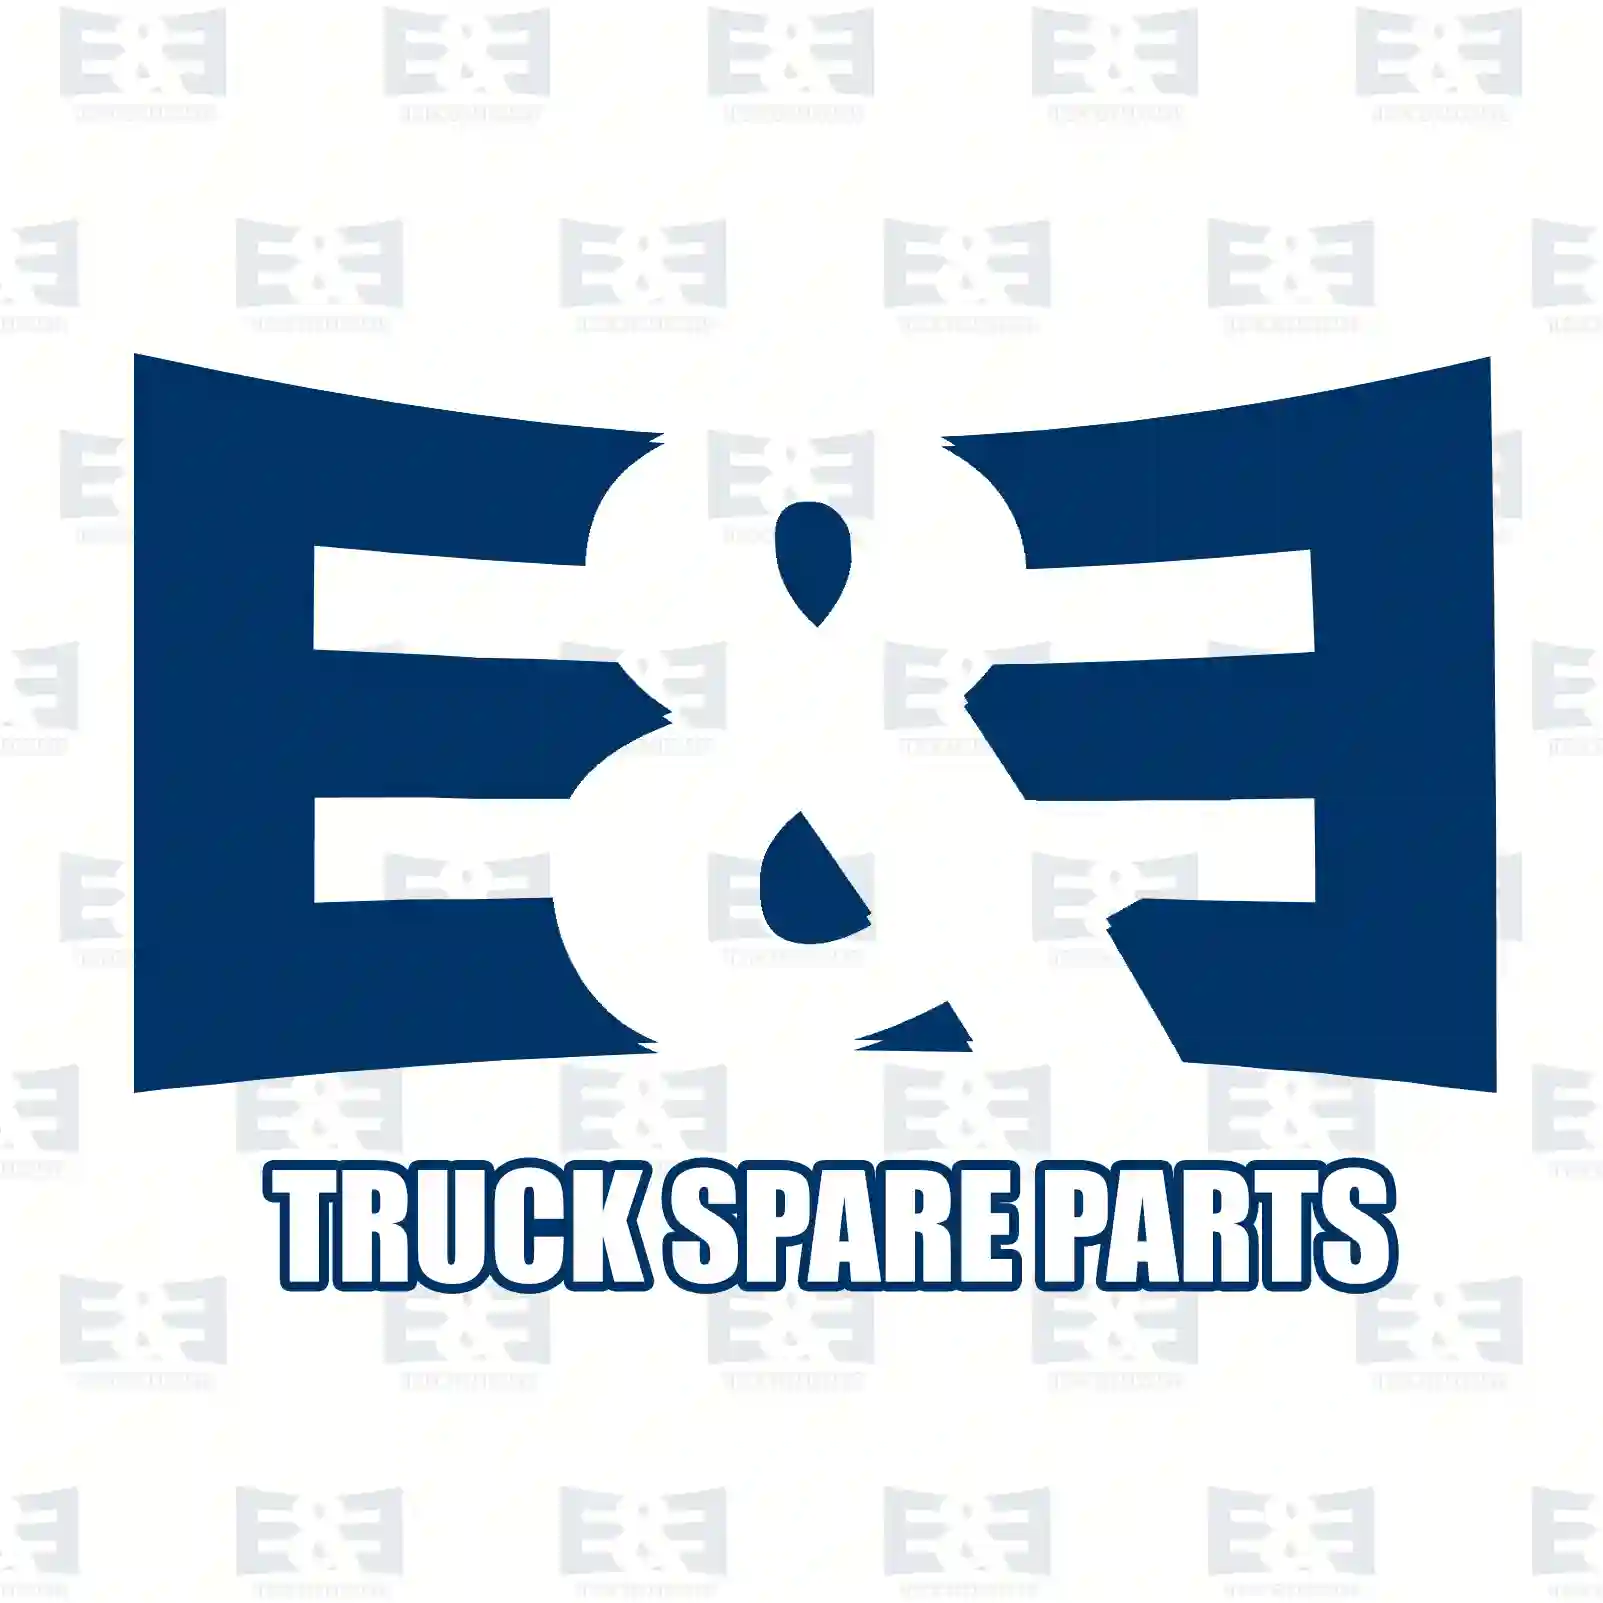 General overhaul kit, 2E2200177, 71728337, 99477116, 99477116 ||  2E2200177 E&E Truck Spare Parts | Truck Spare Parts, Auotomotive Spare Parts General overhaul kit, 2E2200177, 71728337, 99477116, 99477116 ||  2E2200177 E&E Truck Spare Parts | Truck Spare Parts, Auotomotive Spare Parts